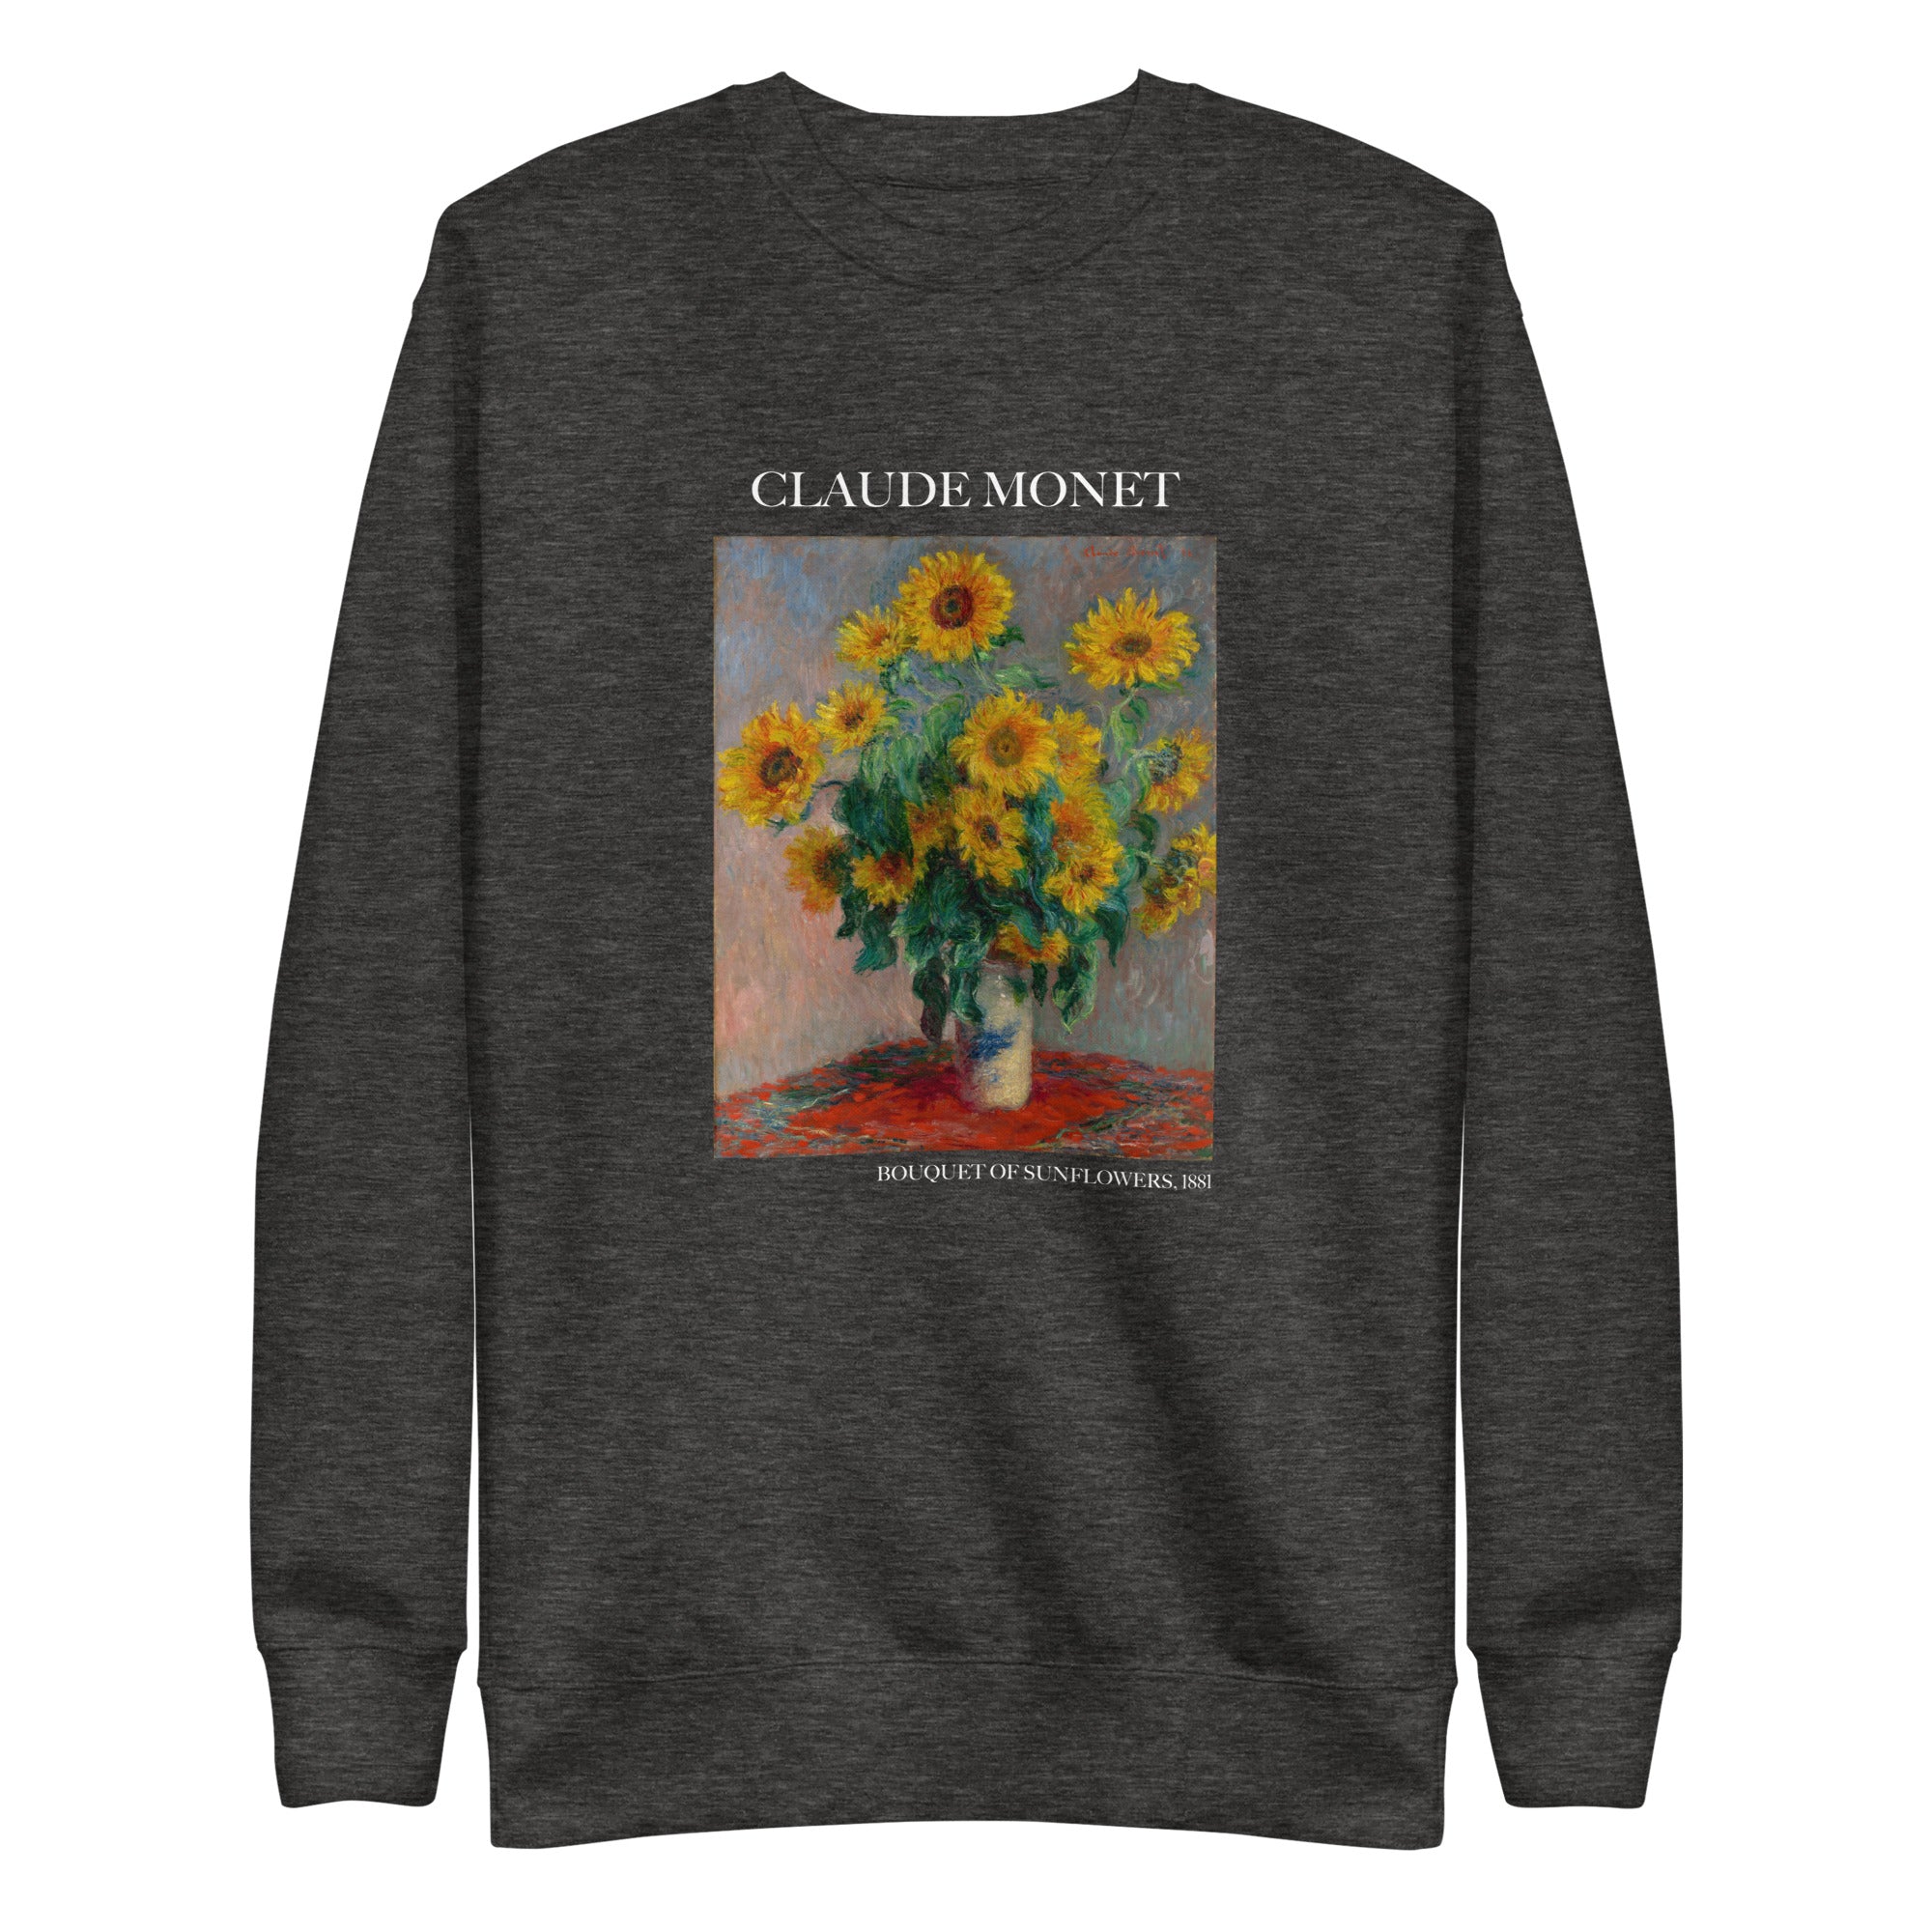 Sweatshirt „Sonnenblumenstrauß“ von Claude Monet, berühmtes Gemälde, Premium-Unisex-Sweatshirt